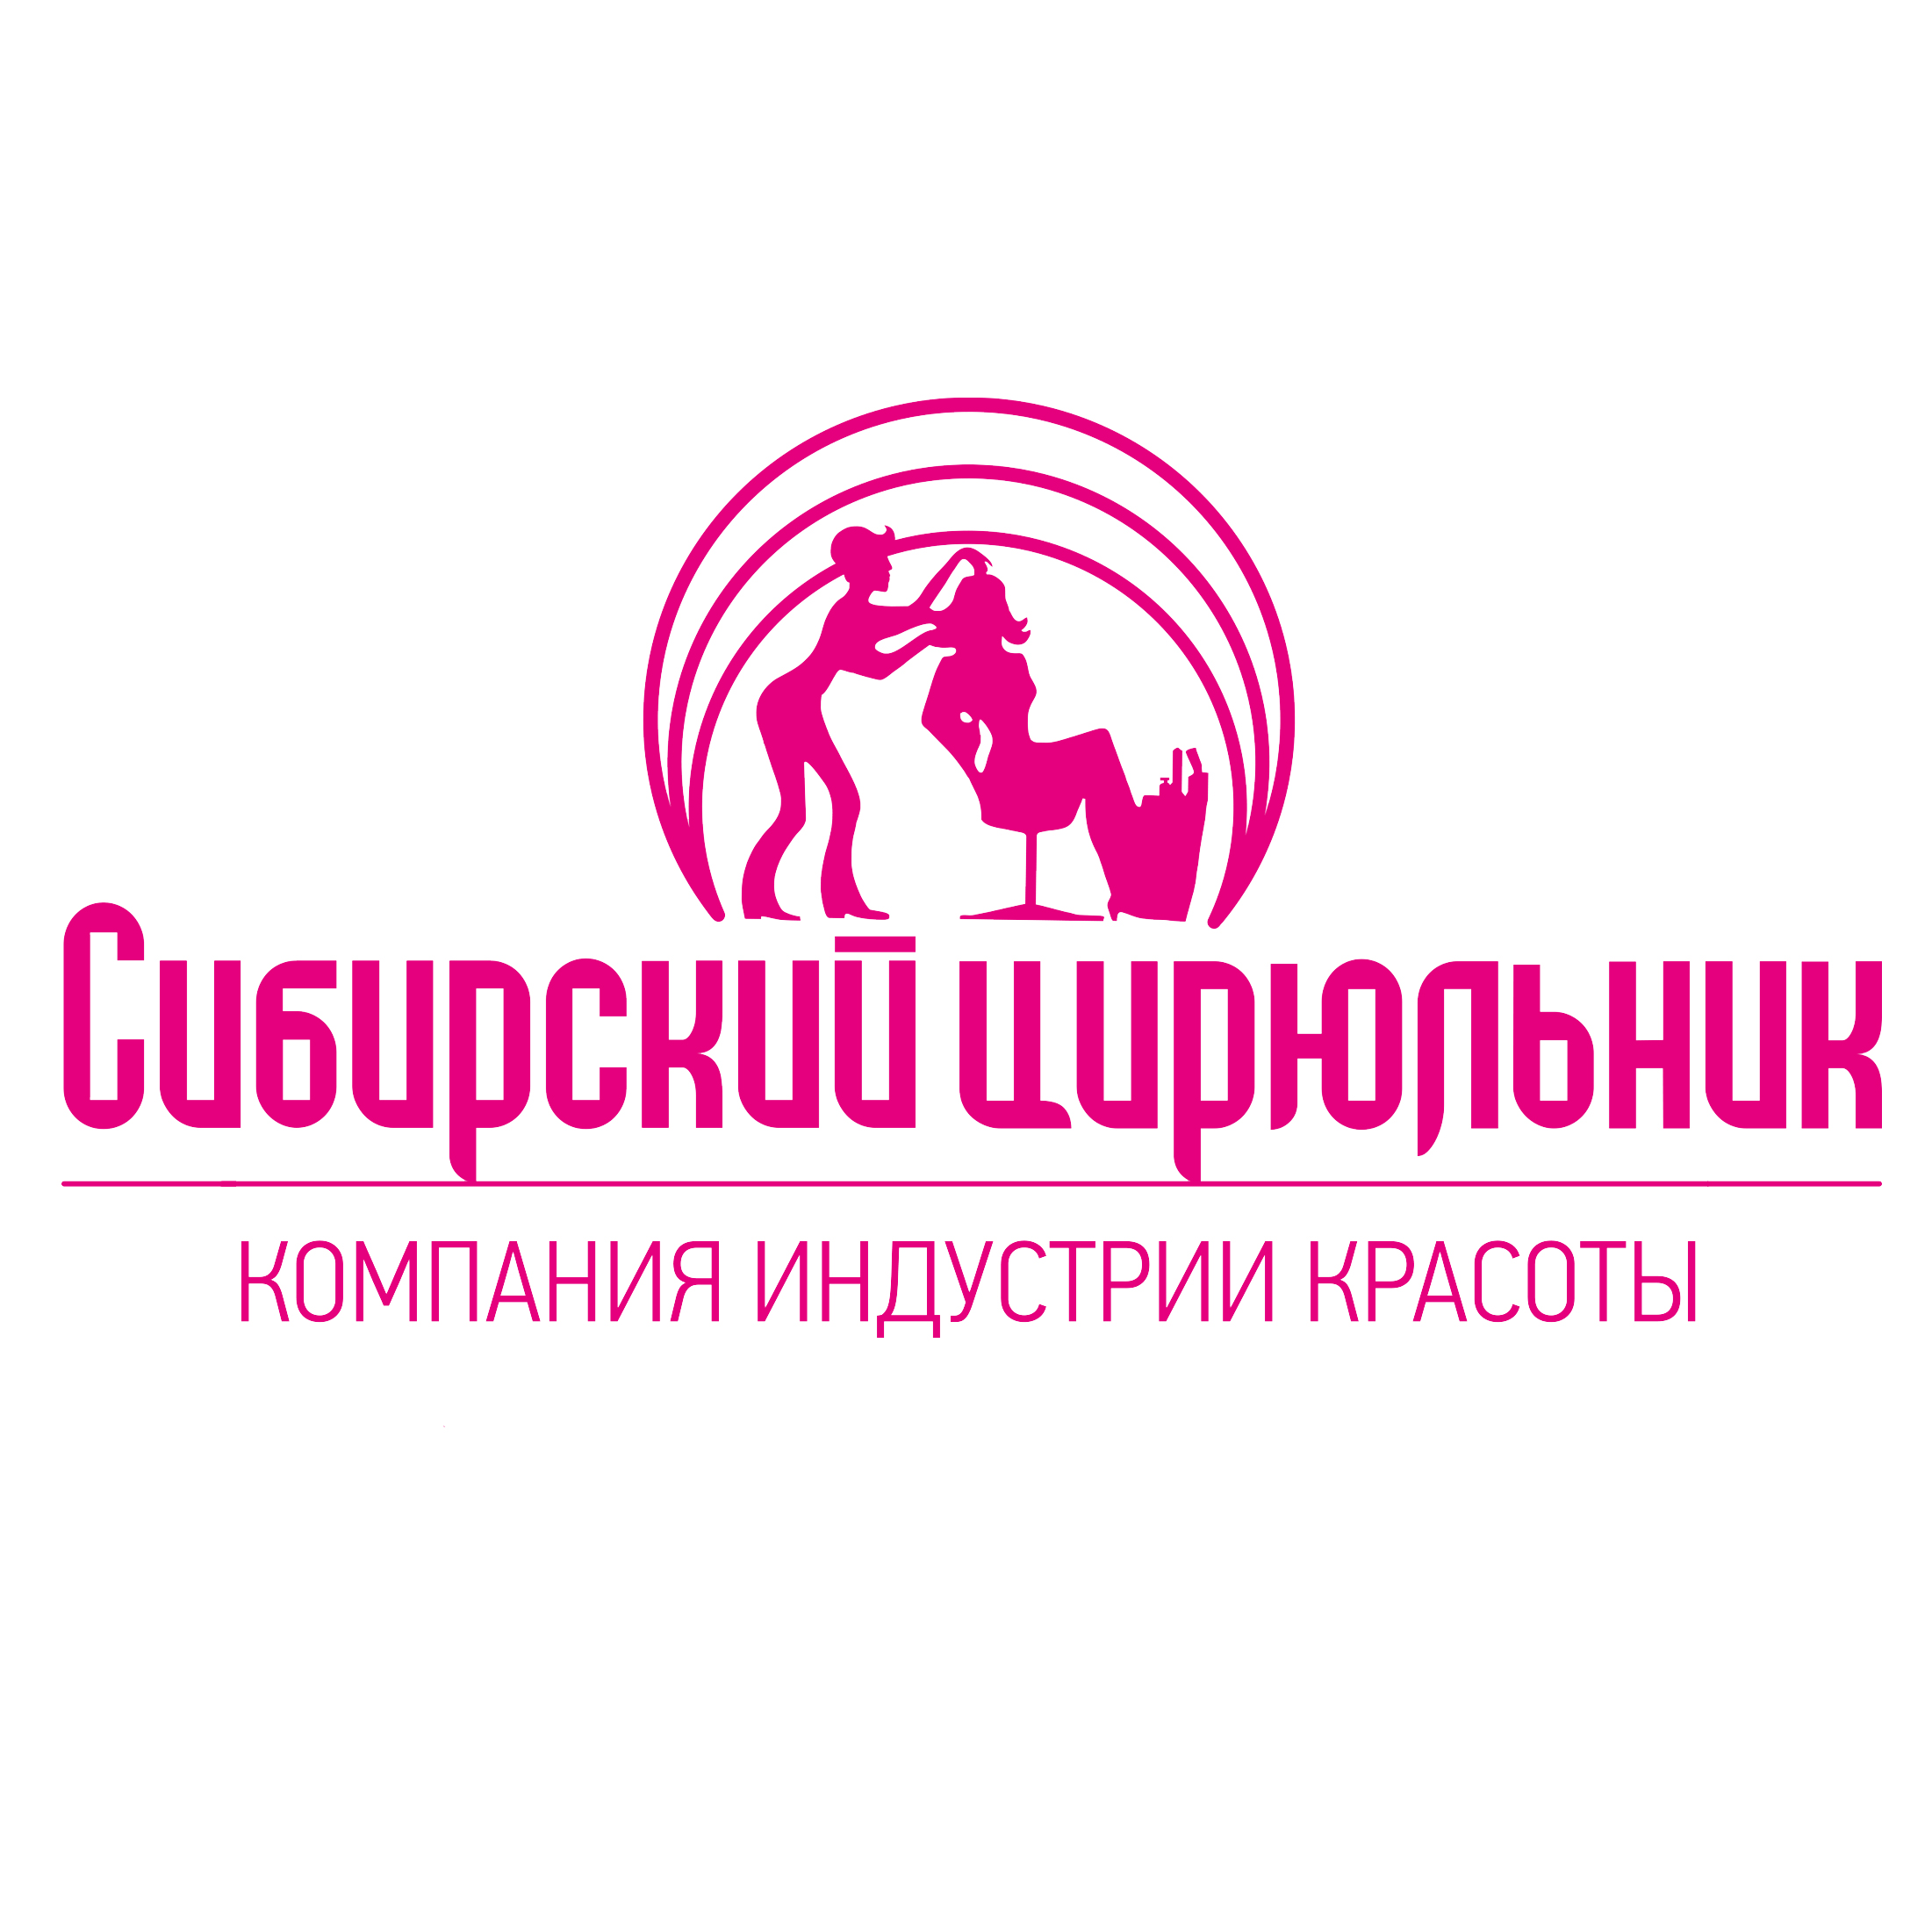 Цирюльник Томск Официальный Сайт Магазин